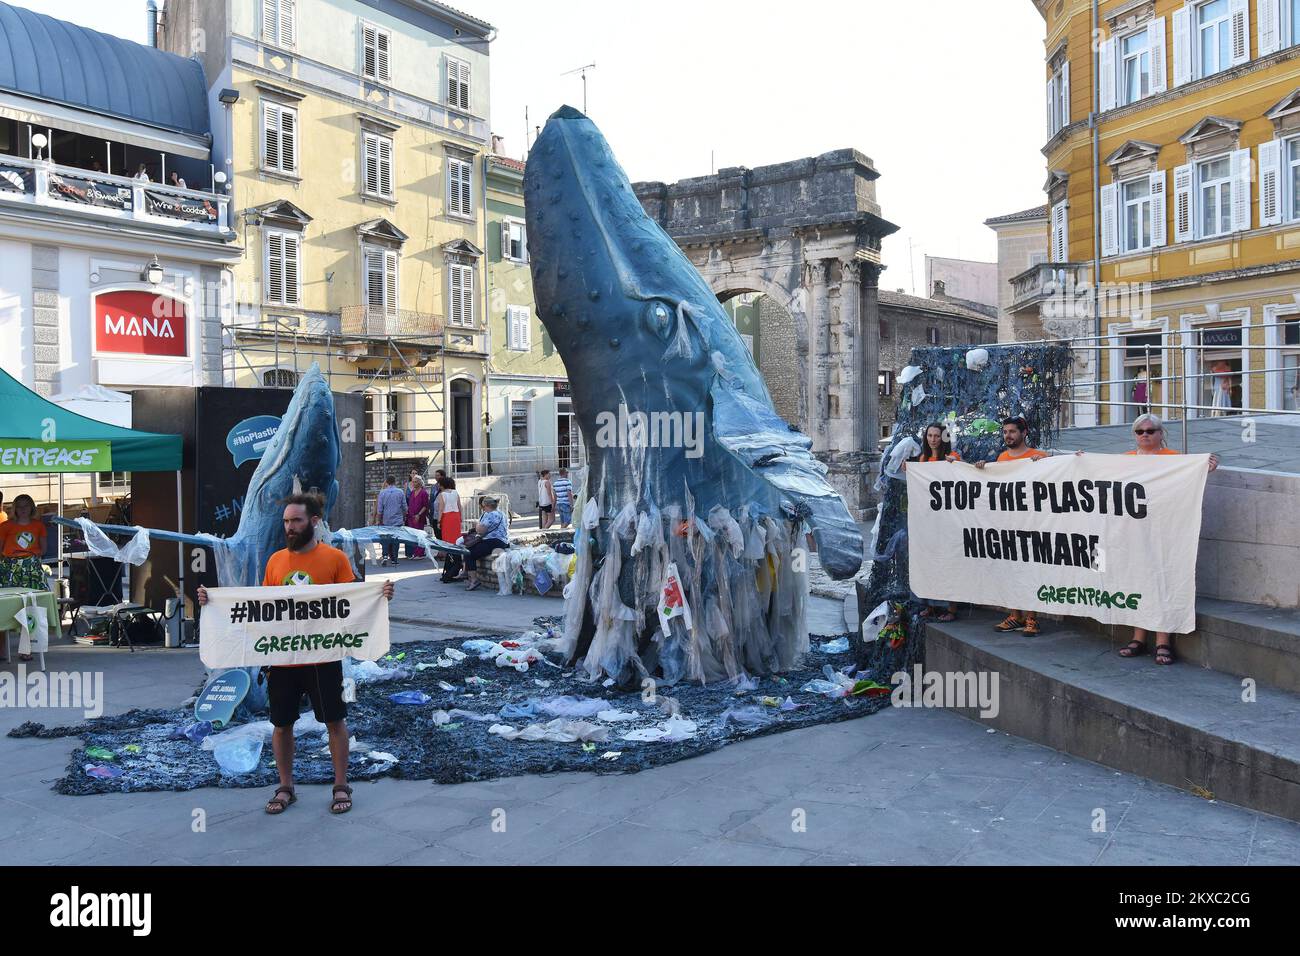 04.07.2019., Pula, Kroatien - im Rahmen einer Kampagne zur Sensibilisierung der Öffentlichkeit für das Problem der großen Mengen an Kunststoffabfällen in Meeren und Ozeanen stellten Aktivisten von Greenpeace am Donnerstag in der Innenstadt von Pula eine Skulptur auf, in der zwei mit Kunststoffabfällen bedeckte Wale gezeigt wurden. Die Skulpturen stellen Wale dar, die aus einem mit Plastikmüll gefüllten Meer hervorgehen. Sie wurden von italienischen Greenpeace-Aktivisten gemacht. Foto: Dusko Marusic/PIXSELL Stockfoto